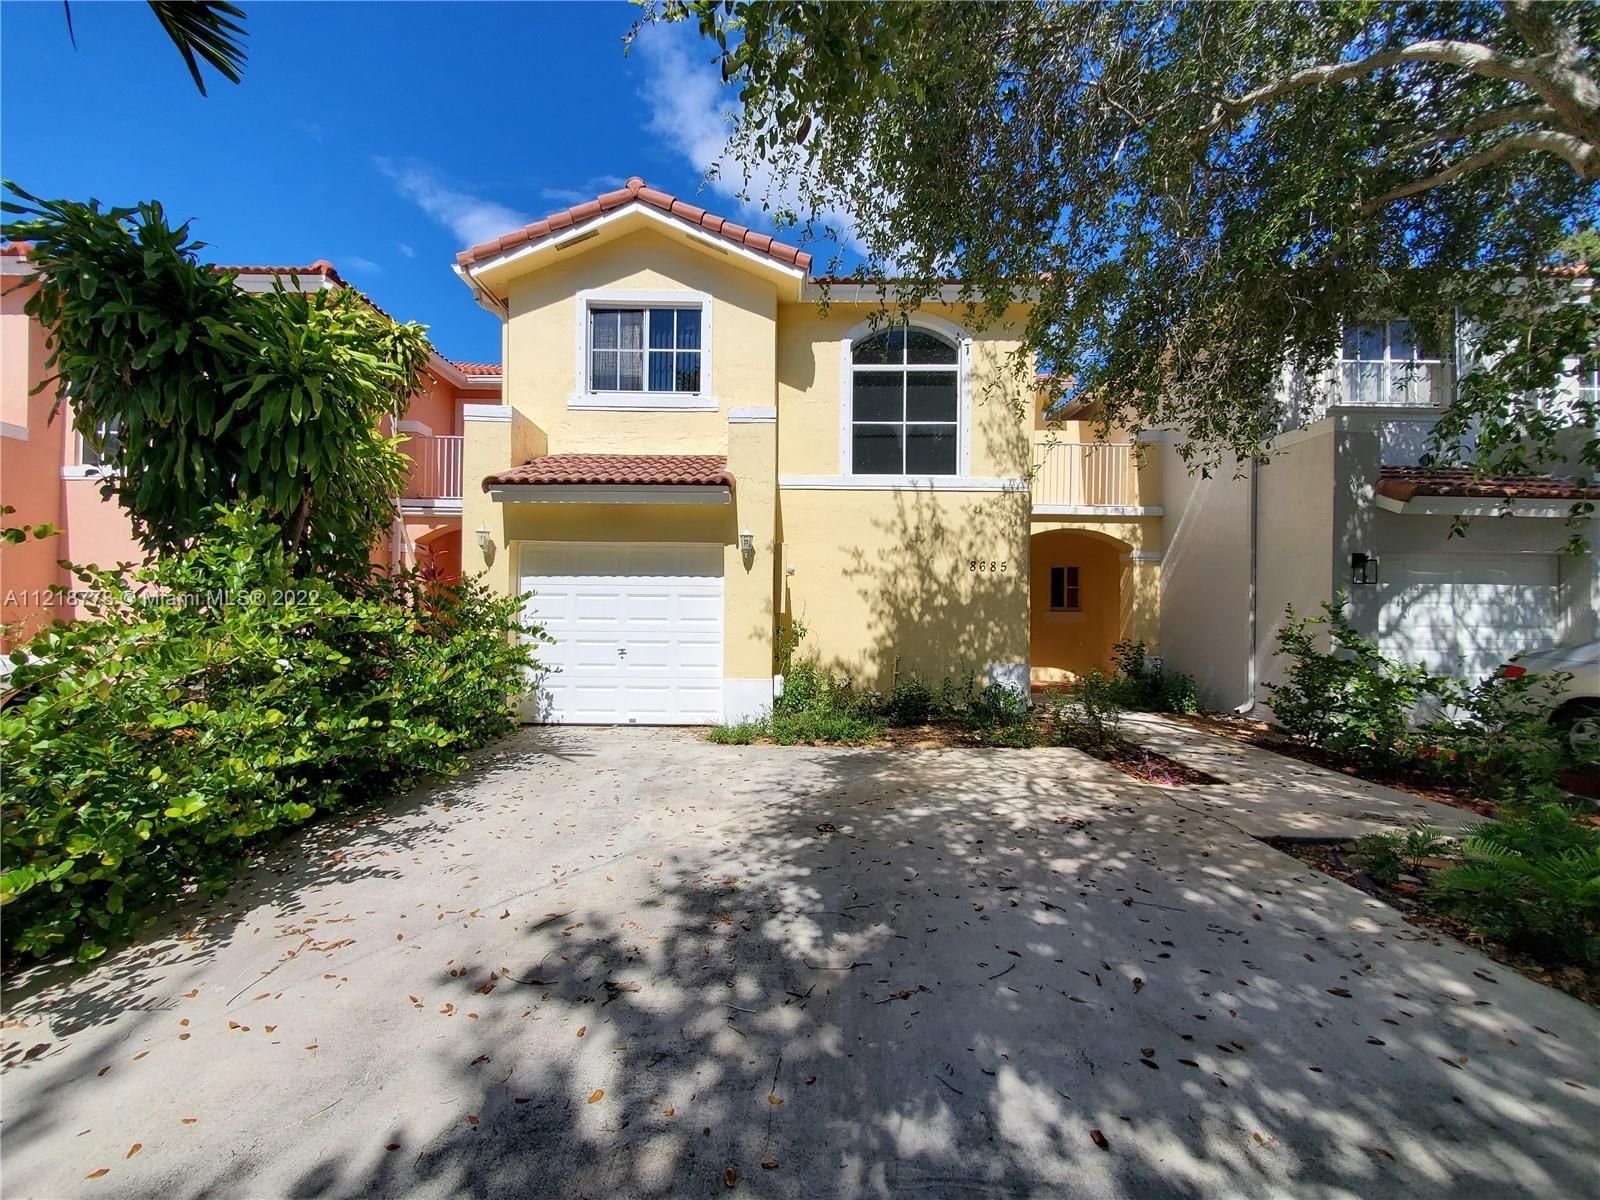 Real estate property located at 8685 159th Path, Miami-Dade County, Miami, FL